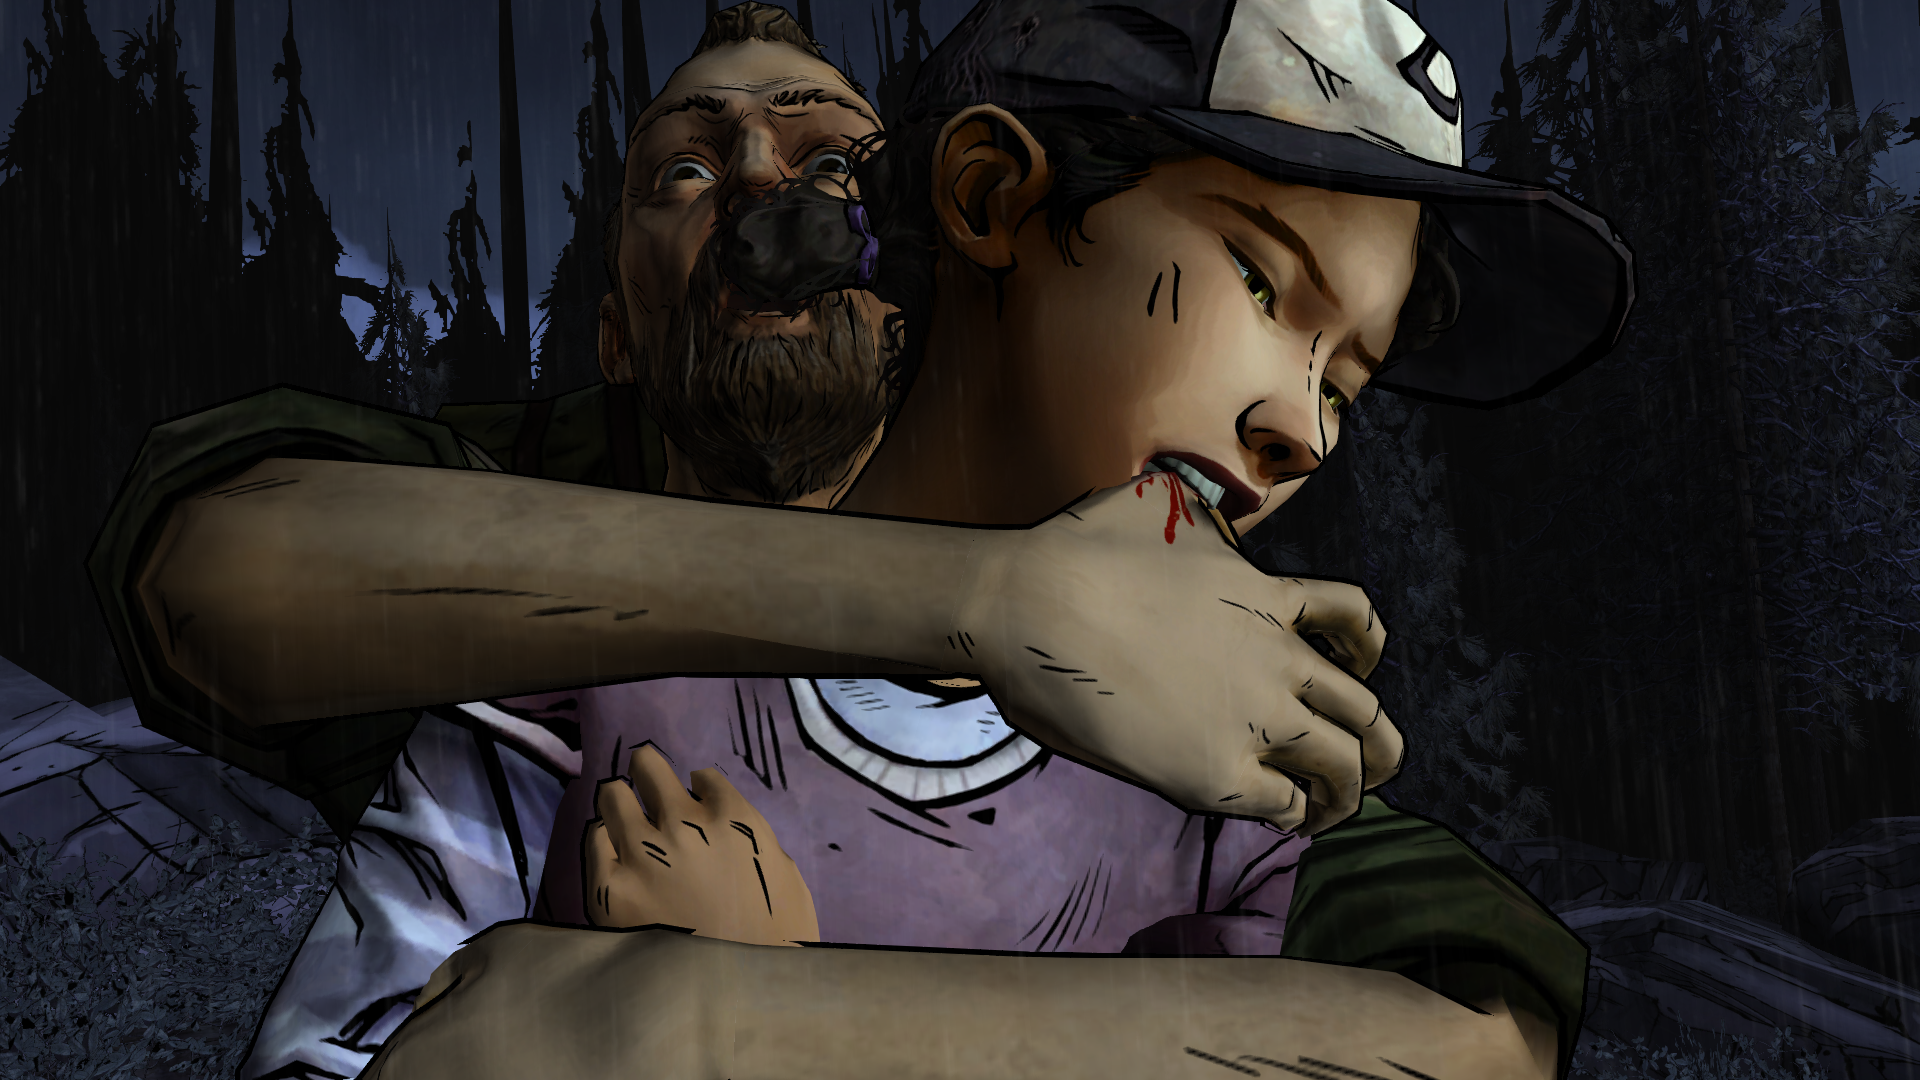 1920x1080 The Walking Dead: Season 2 Wallpaper Background Image. 